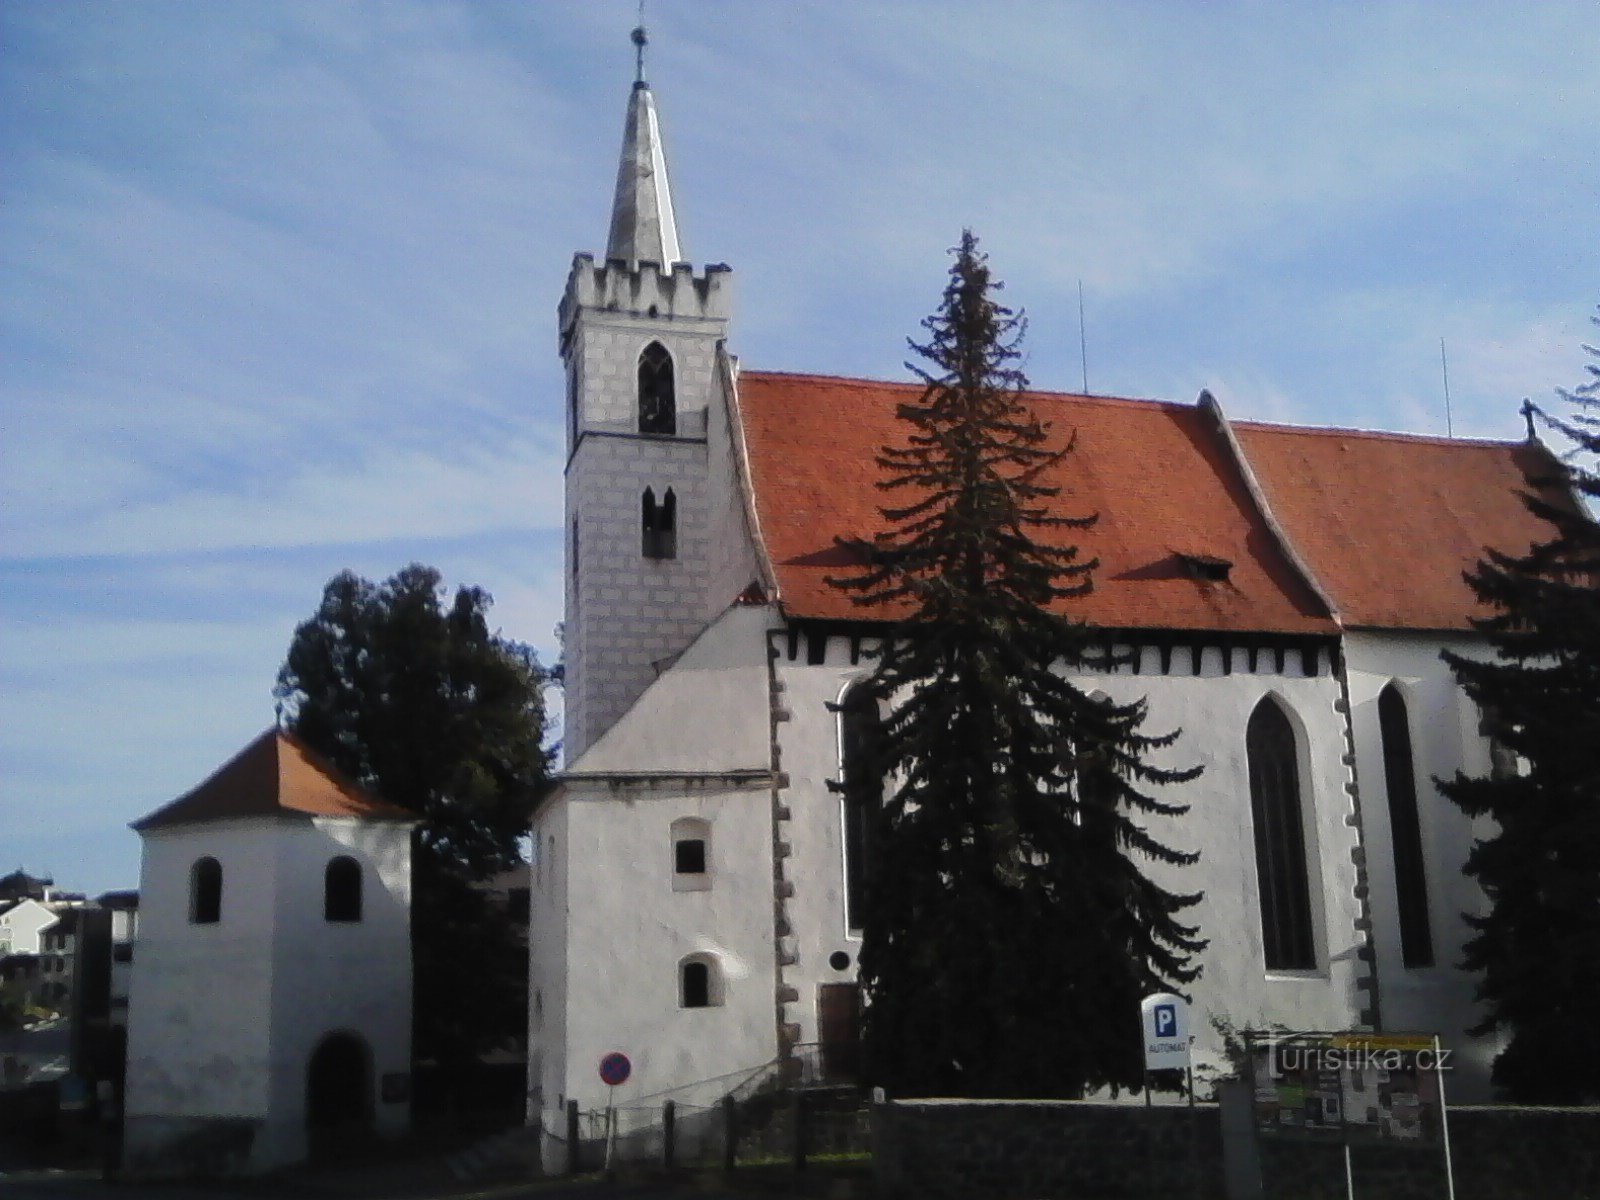 1. Nhà thờ Thánh Martin ở Sedlčany được xây dựng theo phong cách Gothic thời kỳ đầu. Usuzu